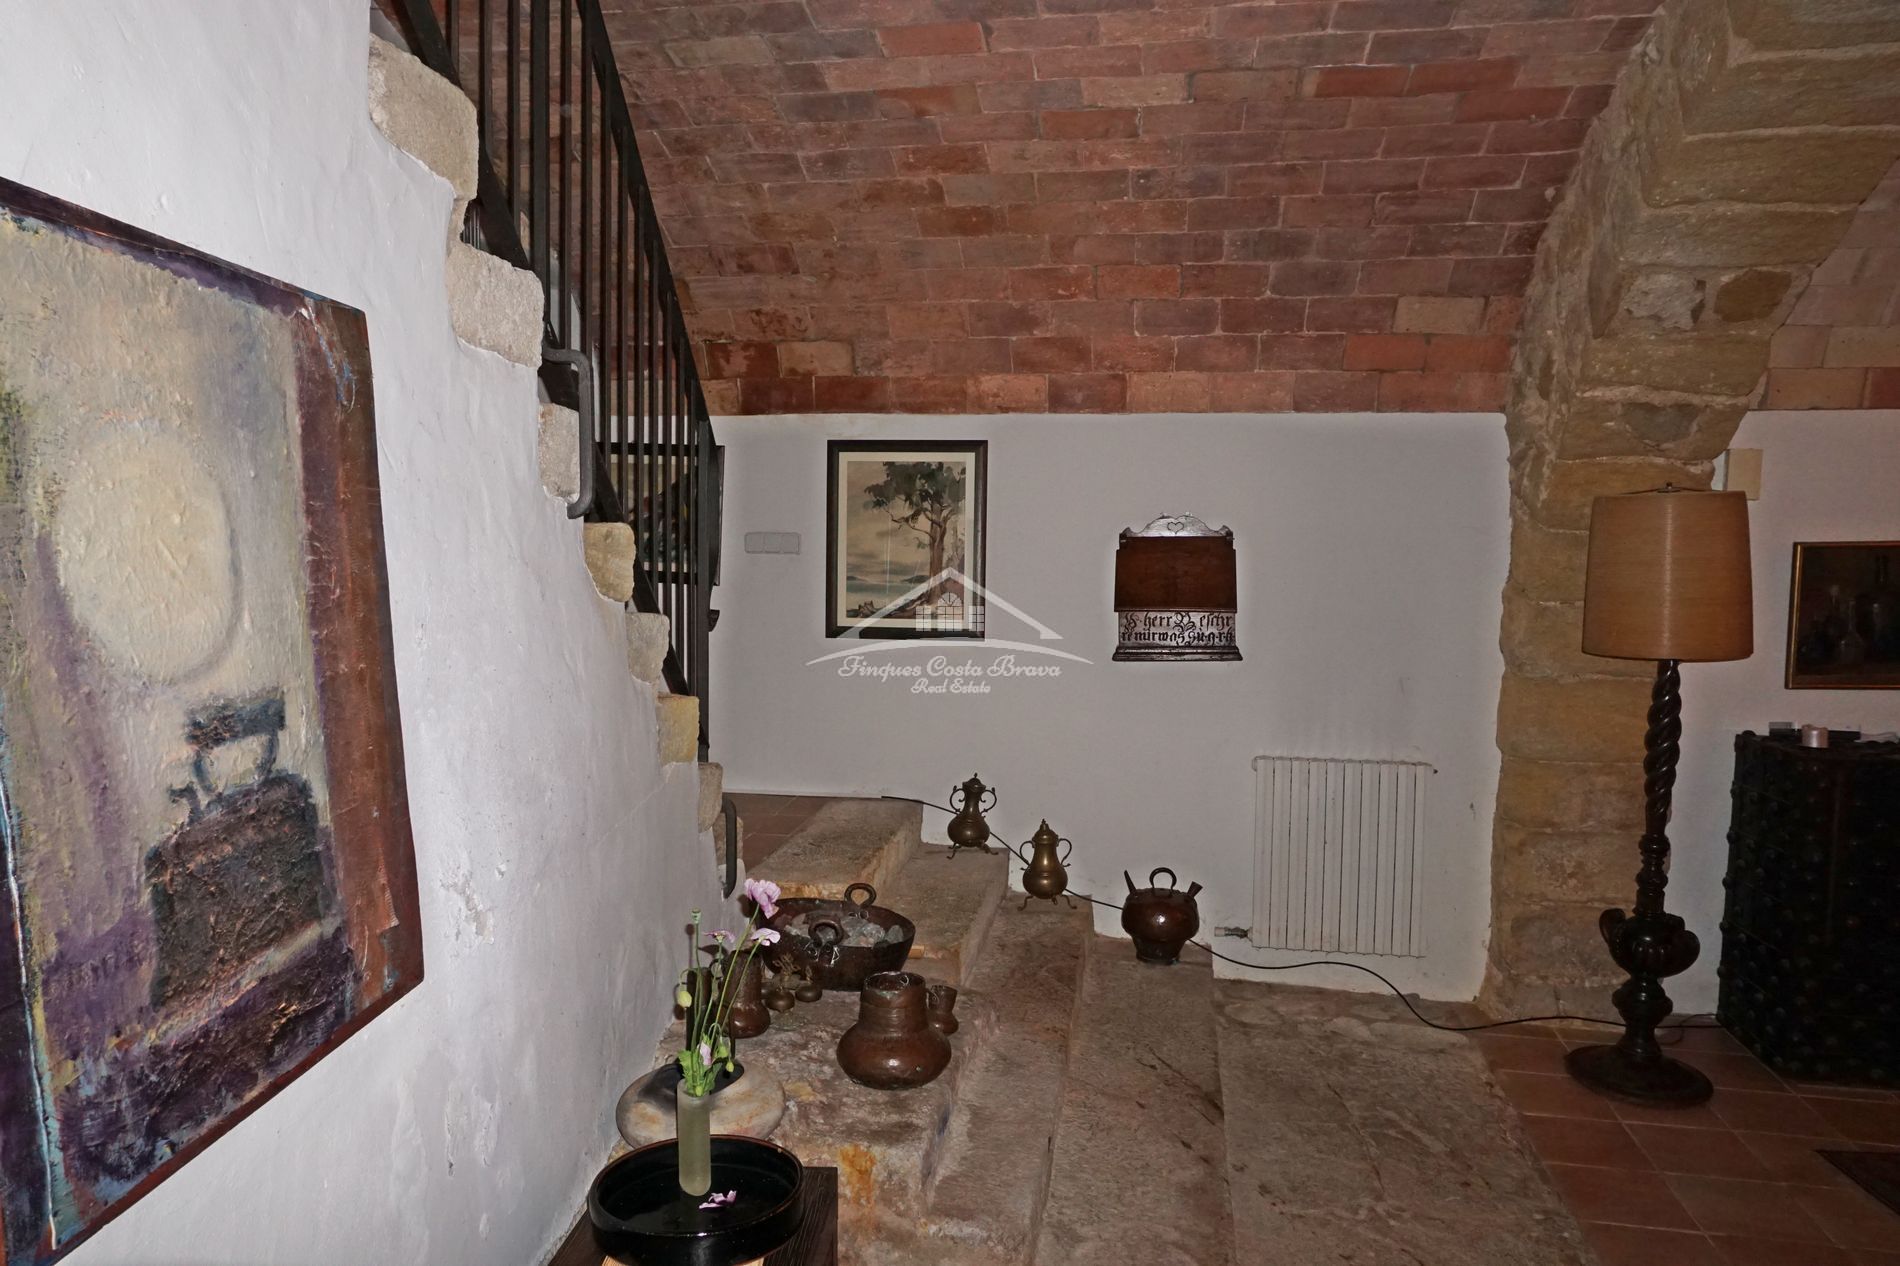 Casa de pueblo restaurada en venta, situada en pleno casco antiguio del pueblo medieval de Pals.n